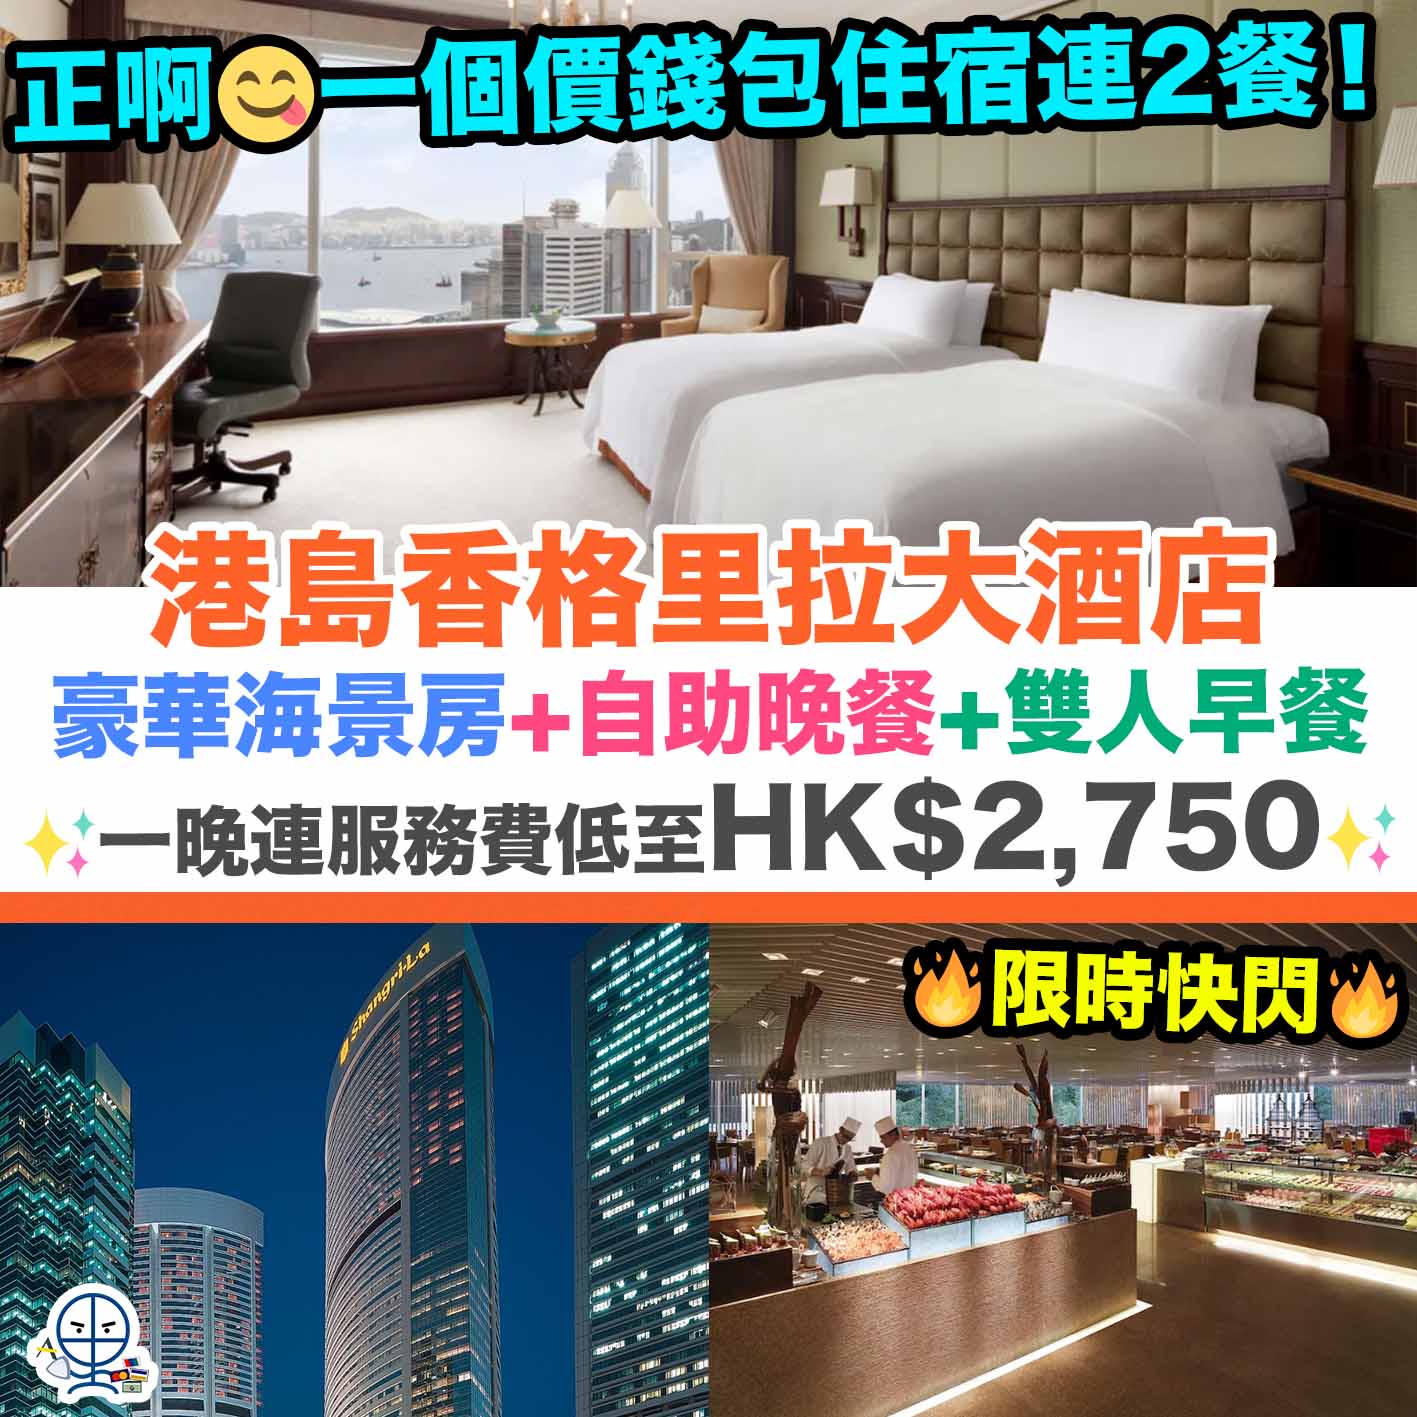 港島香格里拉-香格里拉-Staycation-Island Shangri-La-Hong Kong Hotel Staycation-Hotel Staycation